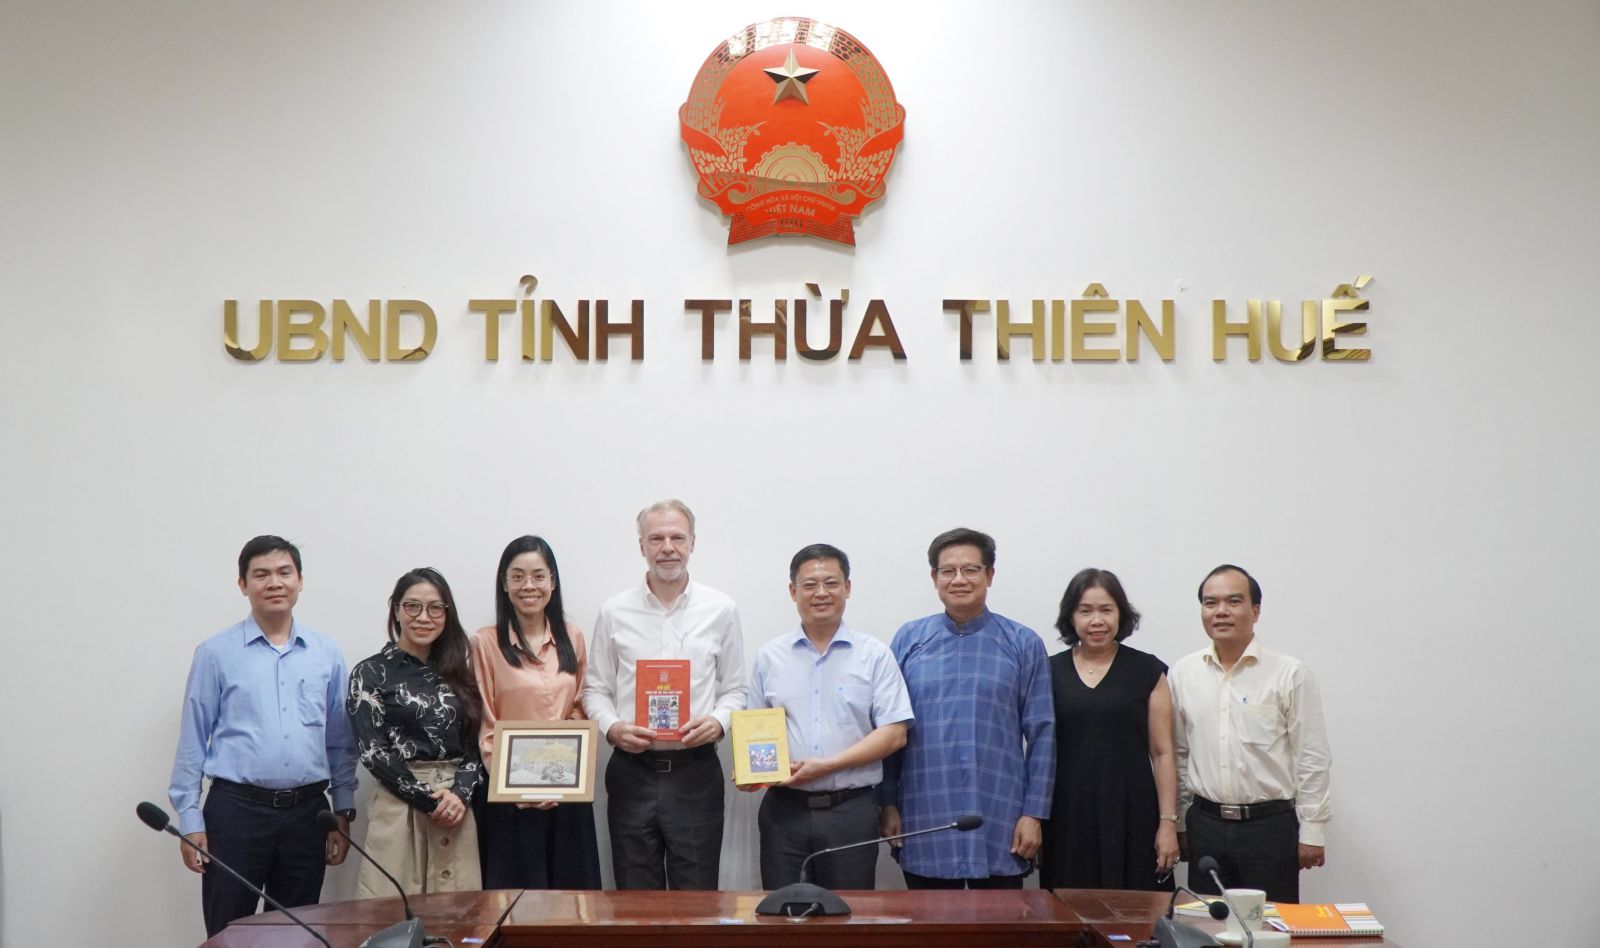 Hợp tác bảo tồn các giá trị di sản tại Thừa Thiên Huế - Ảnh 1.